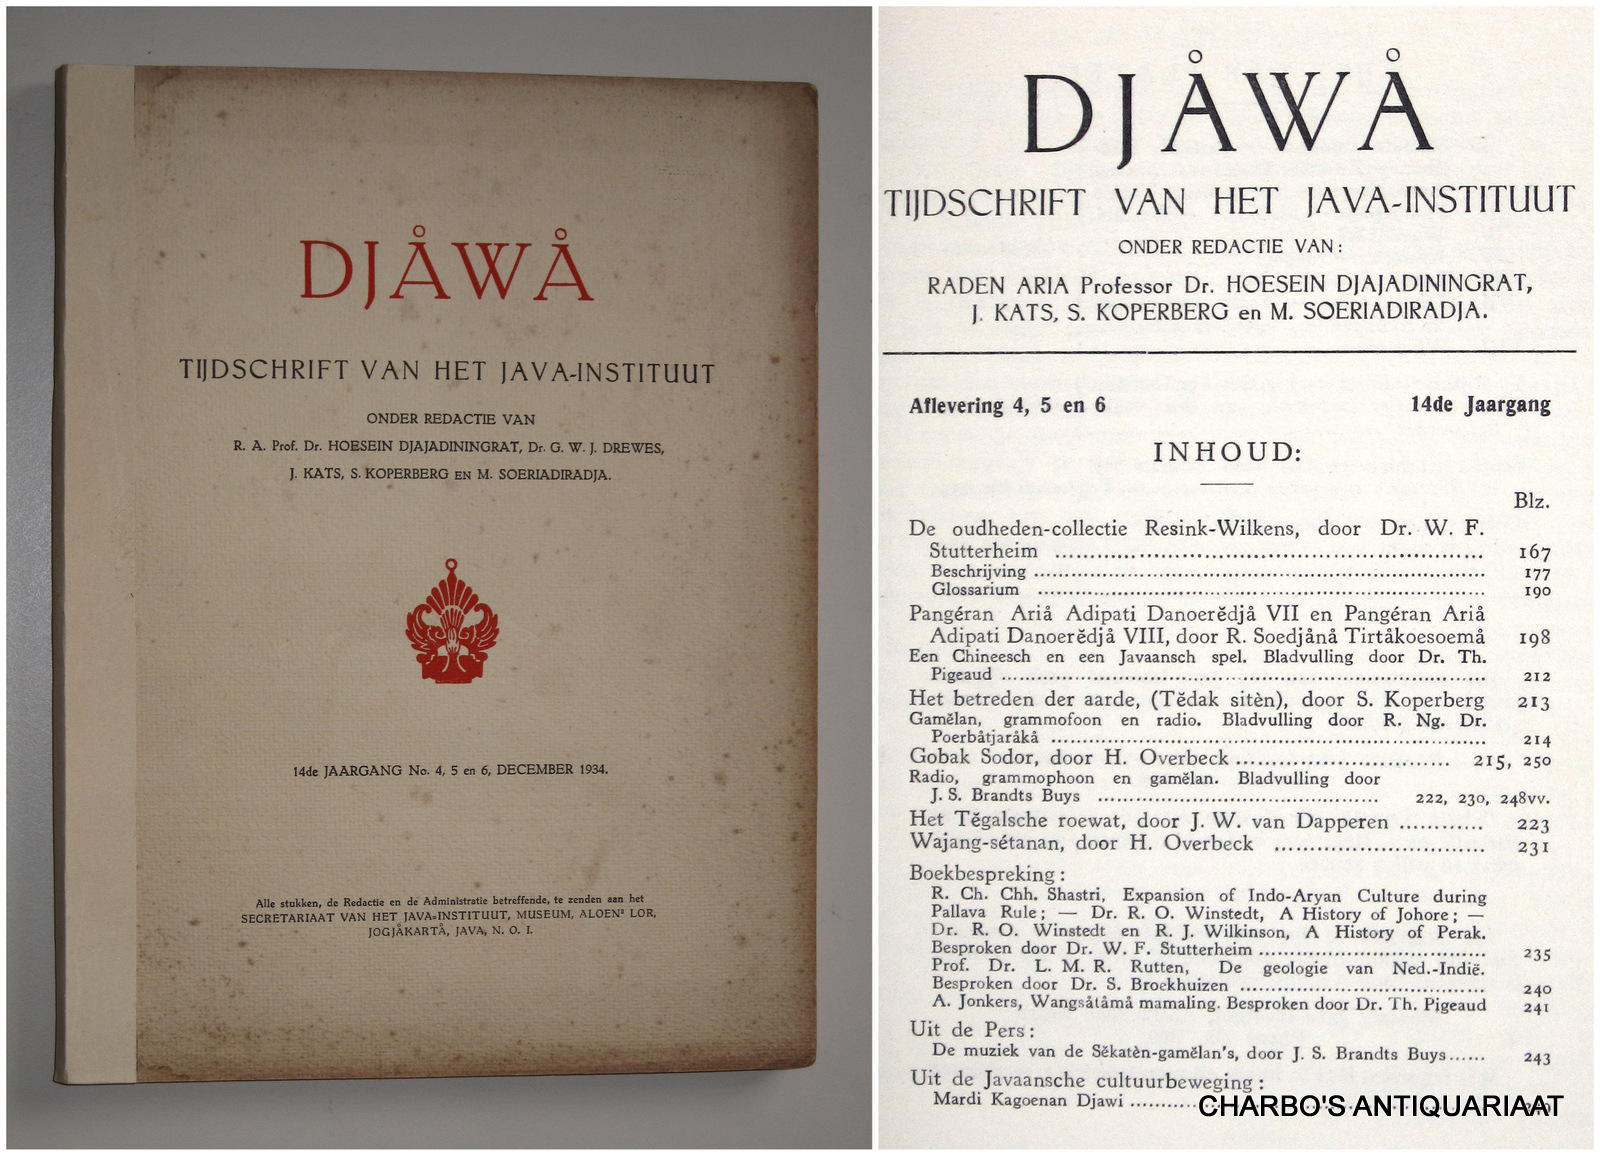 DJAJADININGRAT, HOESEIN (et al, eds.), -  Djawa. Tijdschrift van het Java-Instituut. 14e jaargang, afleveringen 4, 5 en 6 (December 1934).